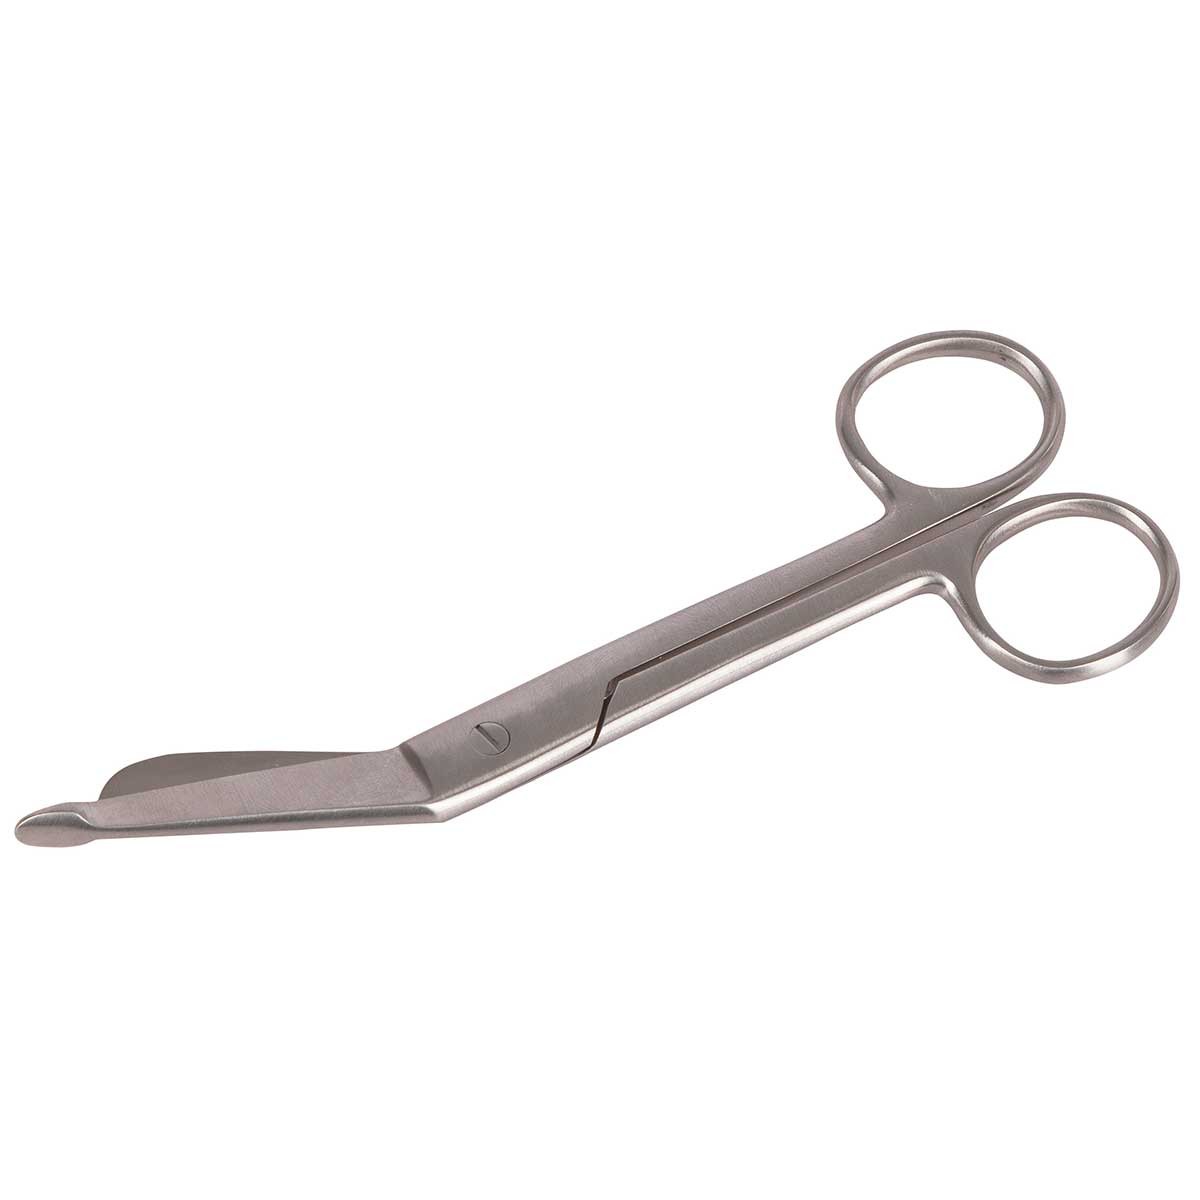 Bandage scissor, 145mm stainless steel